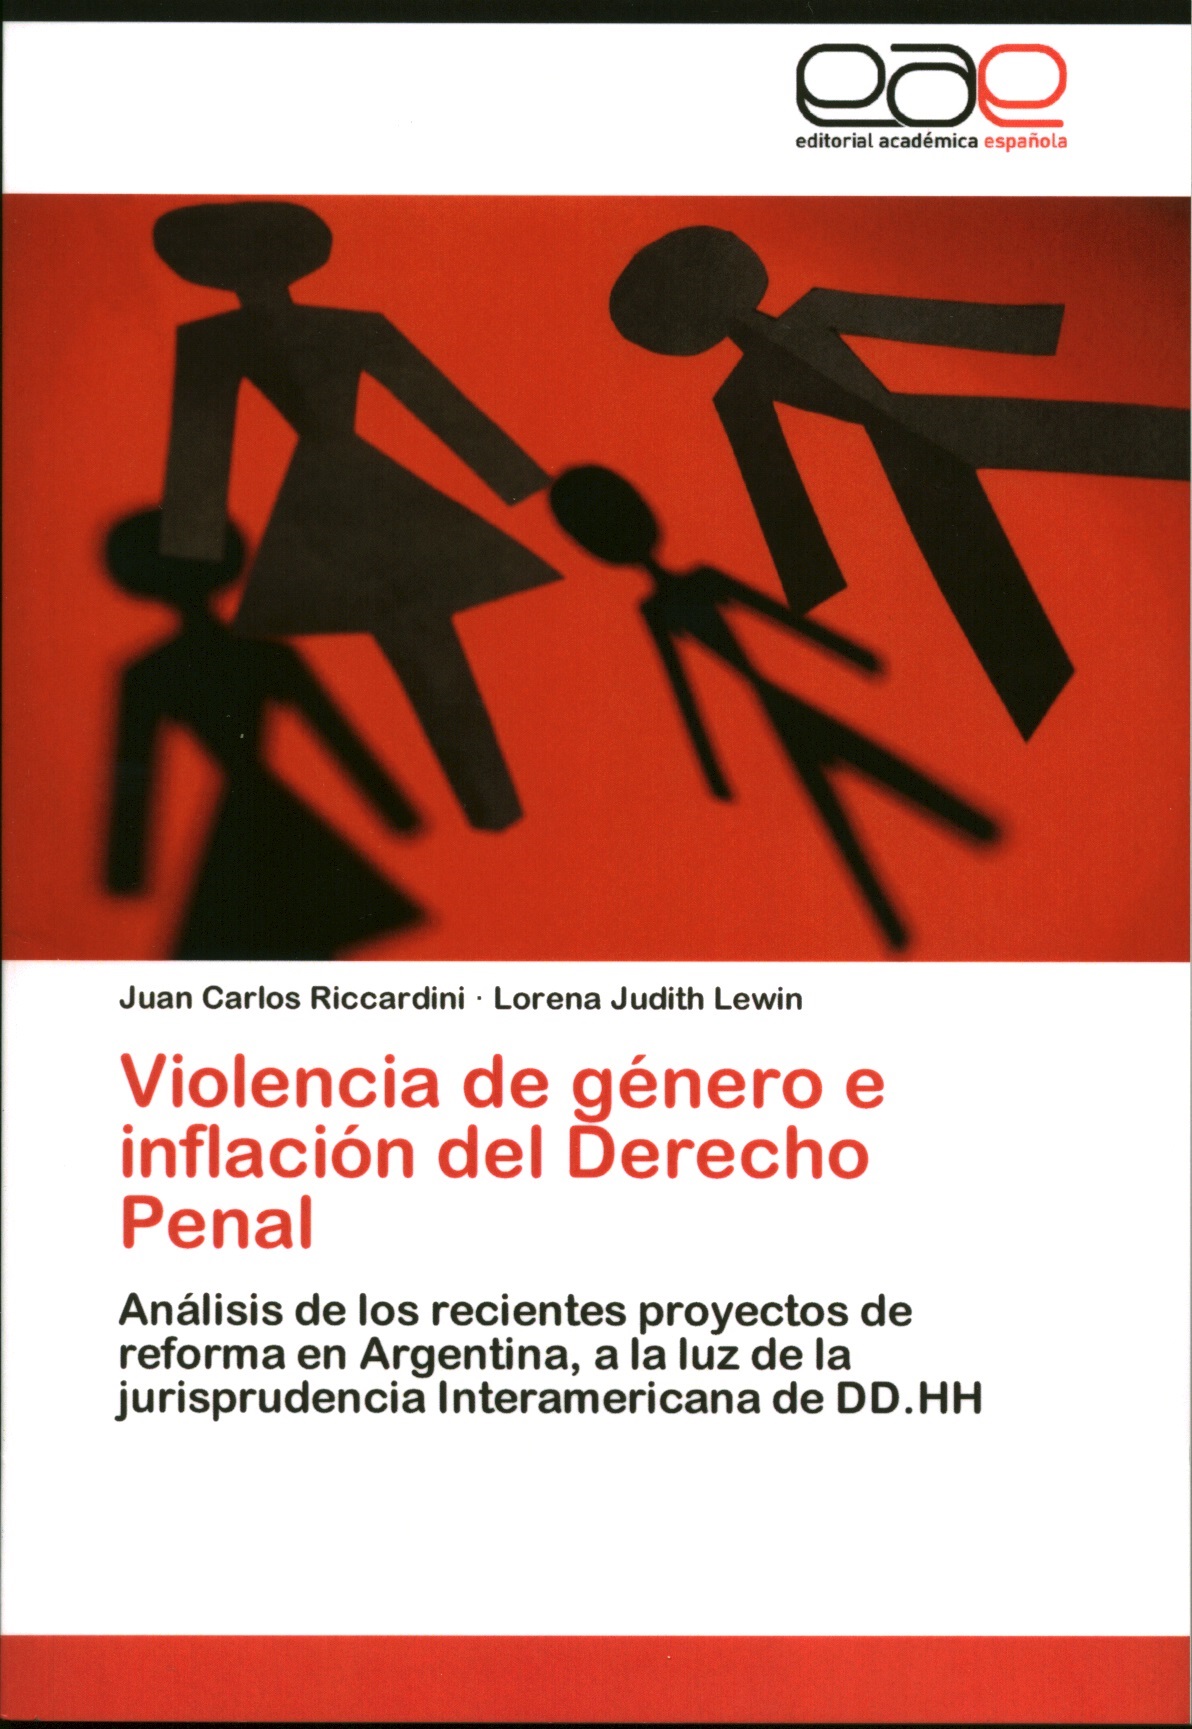 Violencia de género e inflación del derecho penal. Análisis de los recientes proyectos de reforma en Argentina, a la luz de la jurisprudencia interamericana de DD.HH